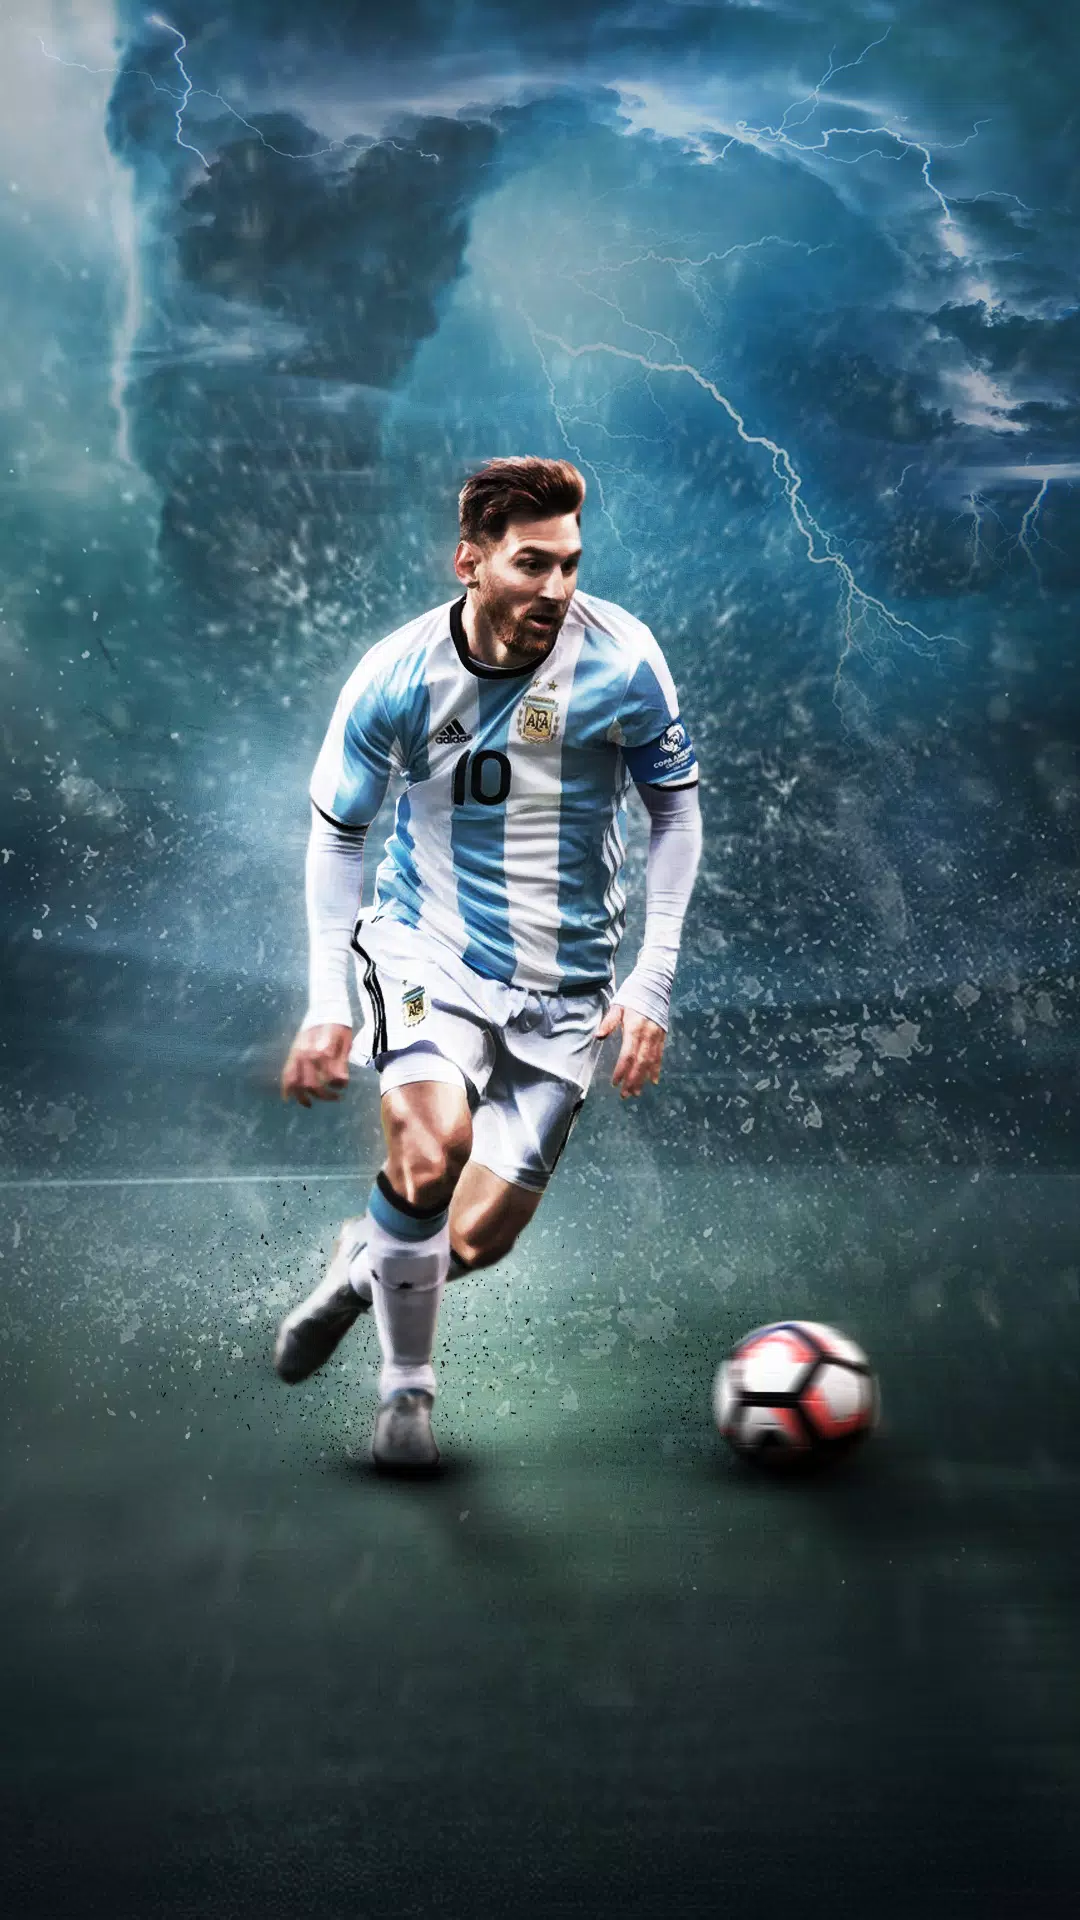 Bạn là fan của Messi và muốn tìm một bức ảnh nền HD đẹp mắt để làm hình nền điện thoại hay máy tính? Hãy xem ngay bức ảnh nền của Lionel Messi Wallpaper HD này để cảm nhận rõ hơn sự vĩ đại của ngôi sao bóng đá hàng đầu thế giới!